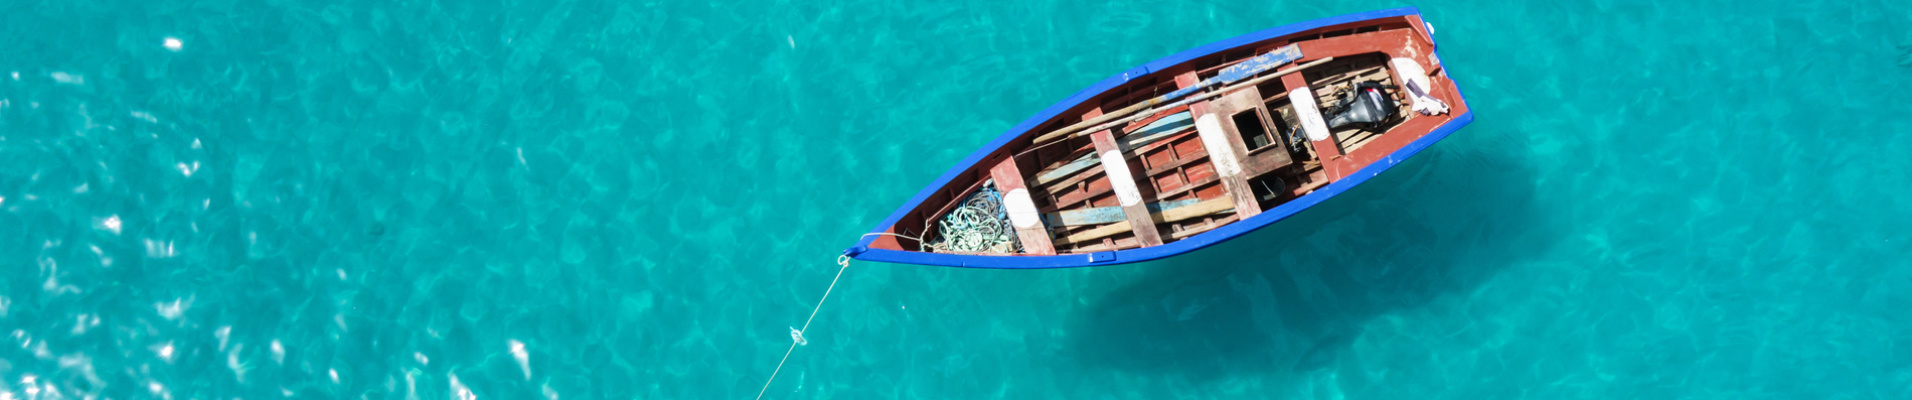 Cap Vert bateau de pêche